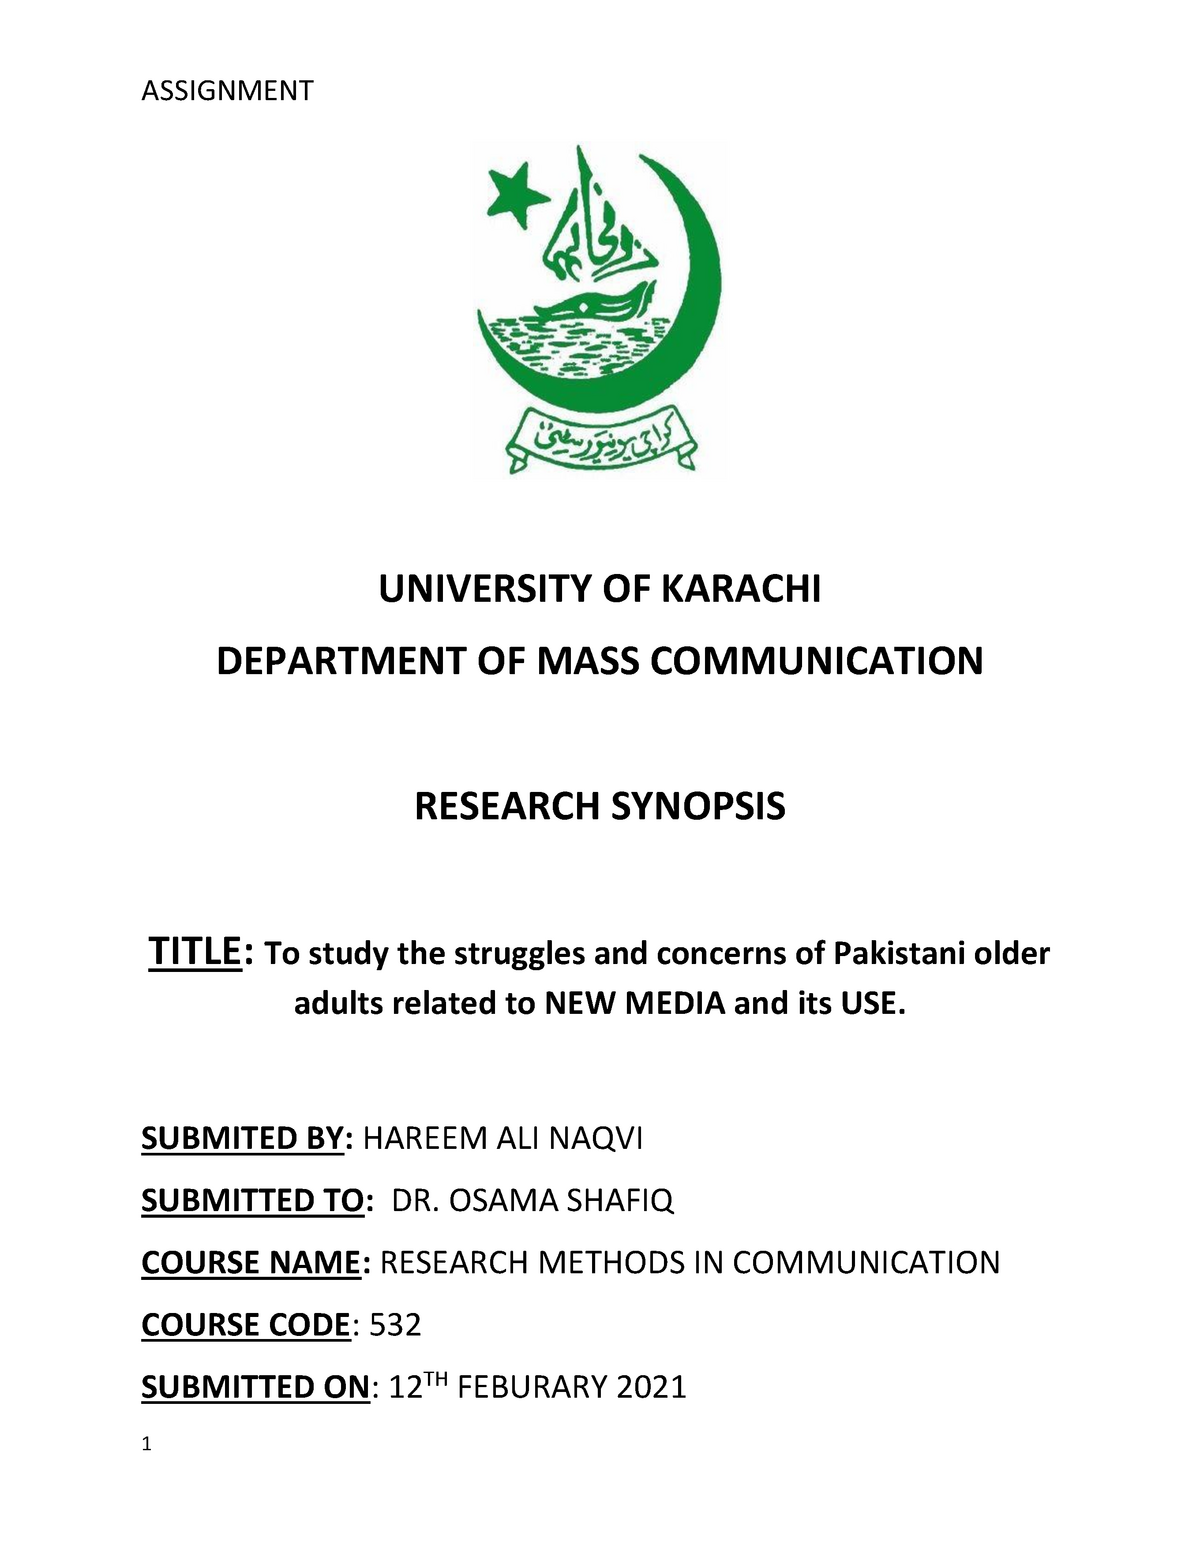 karachi university assignment title page